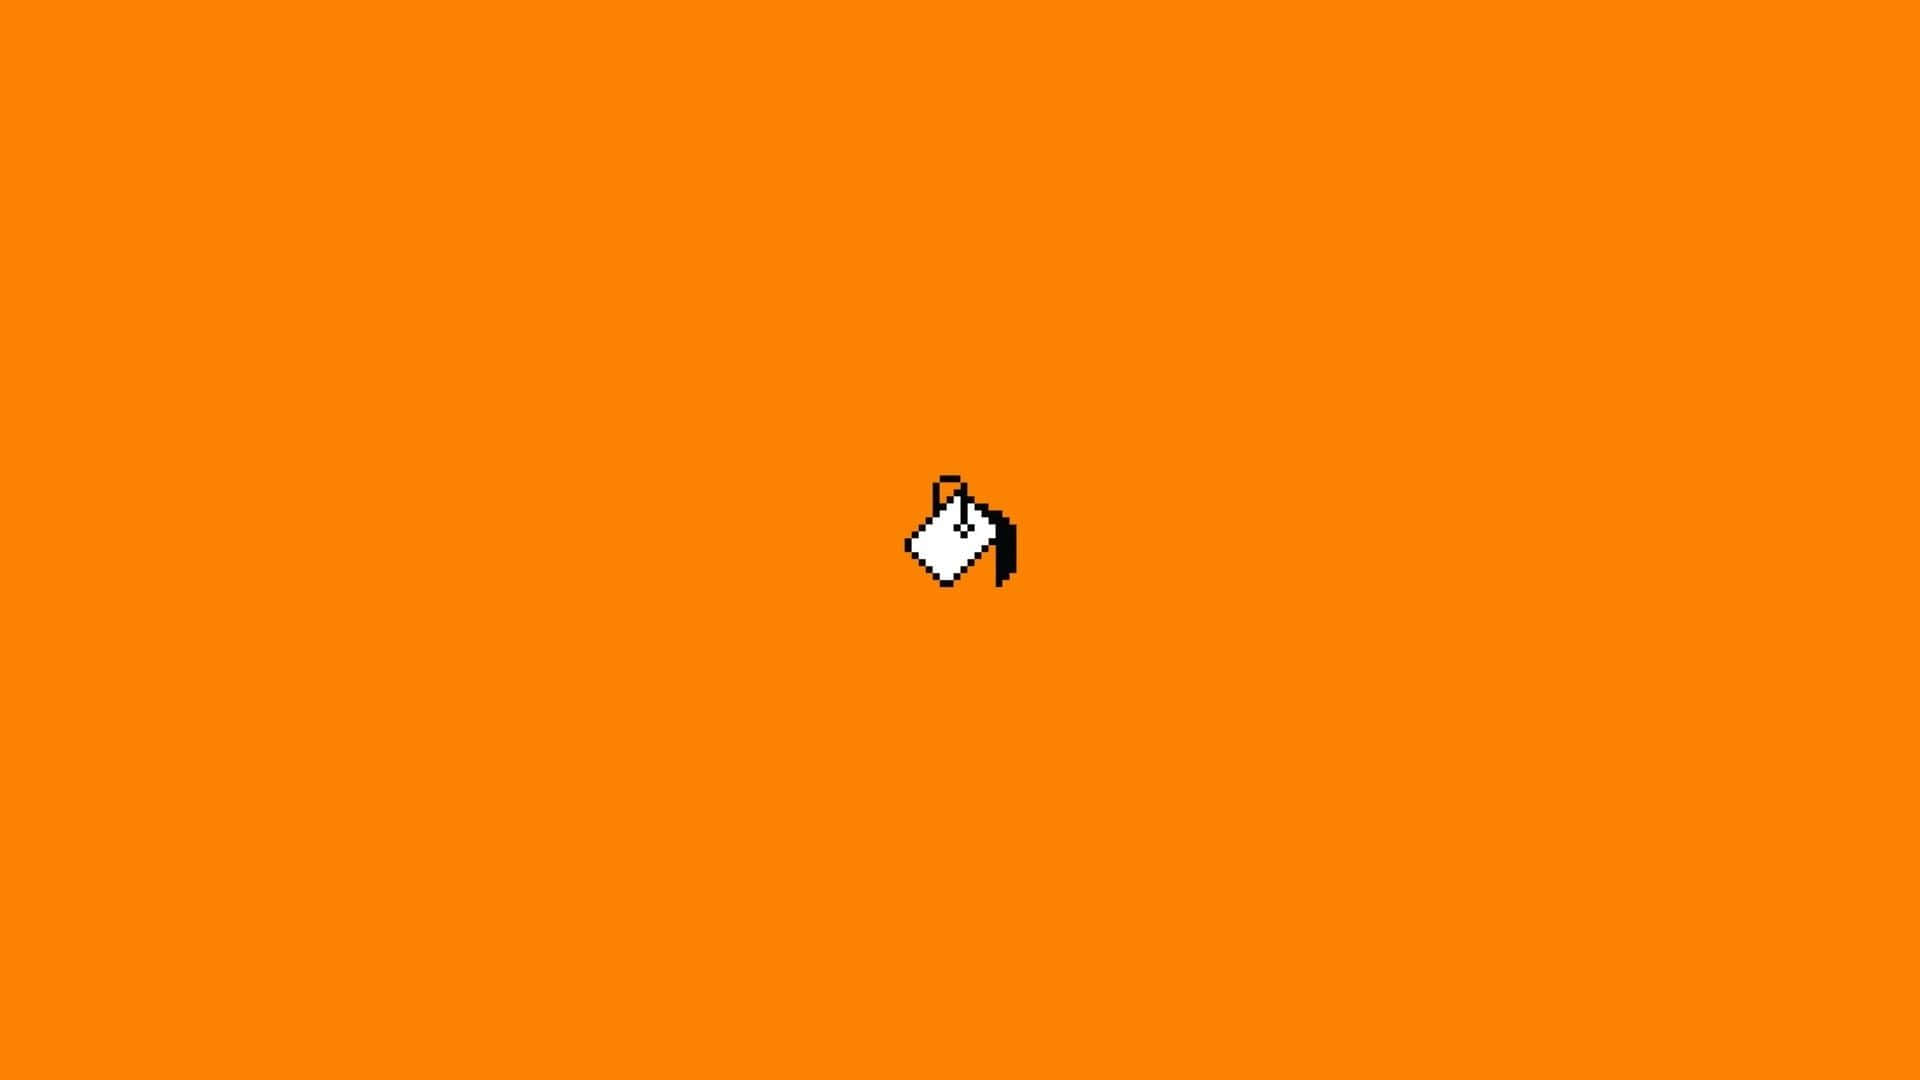 Mspaint-ikon På En Orange Bakgrund.